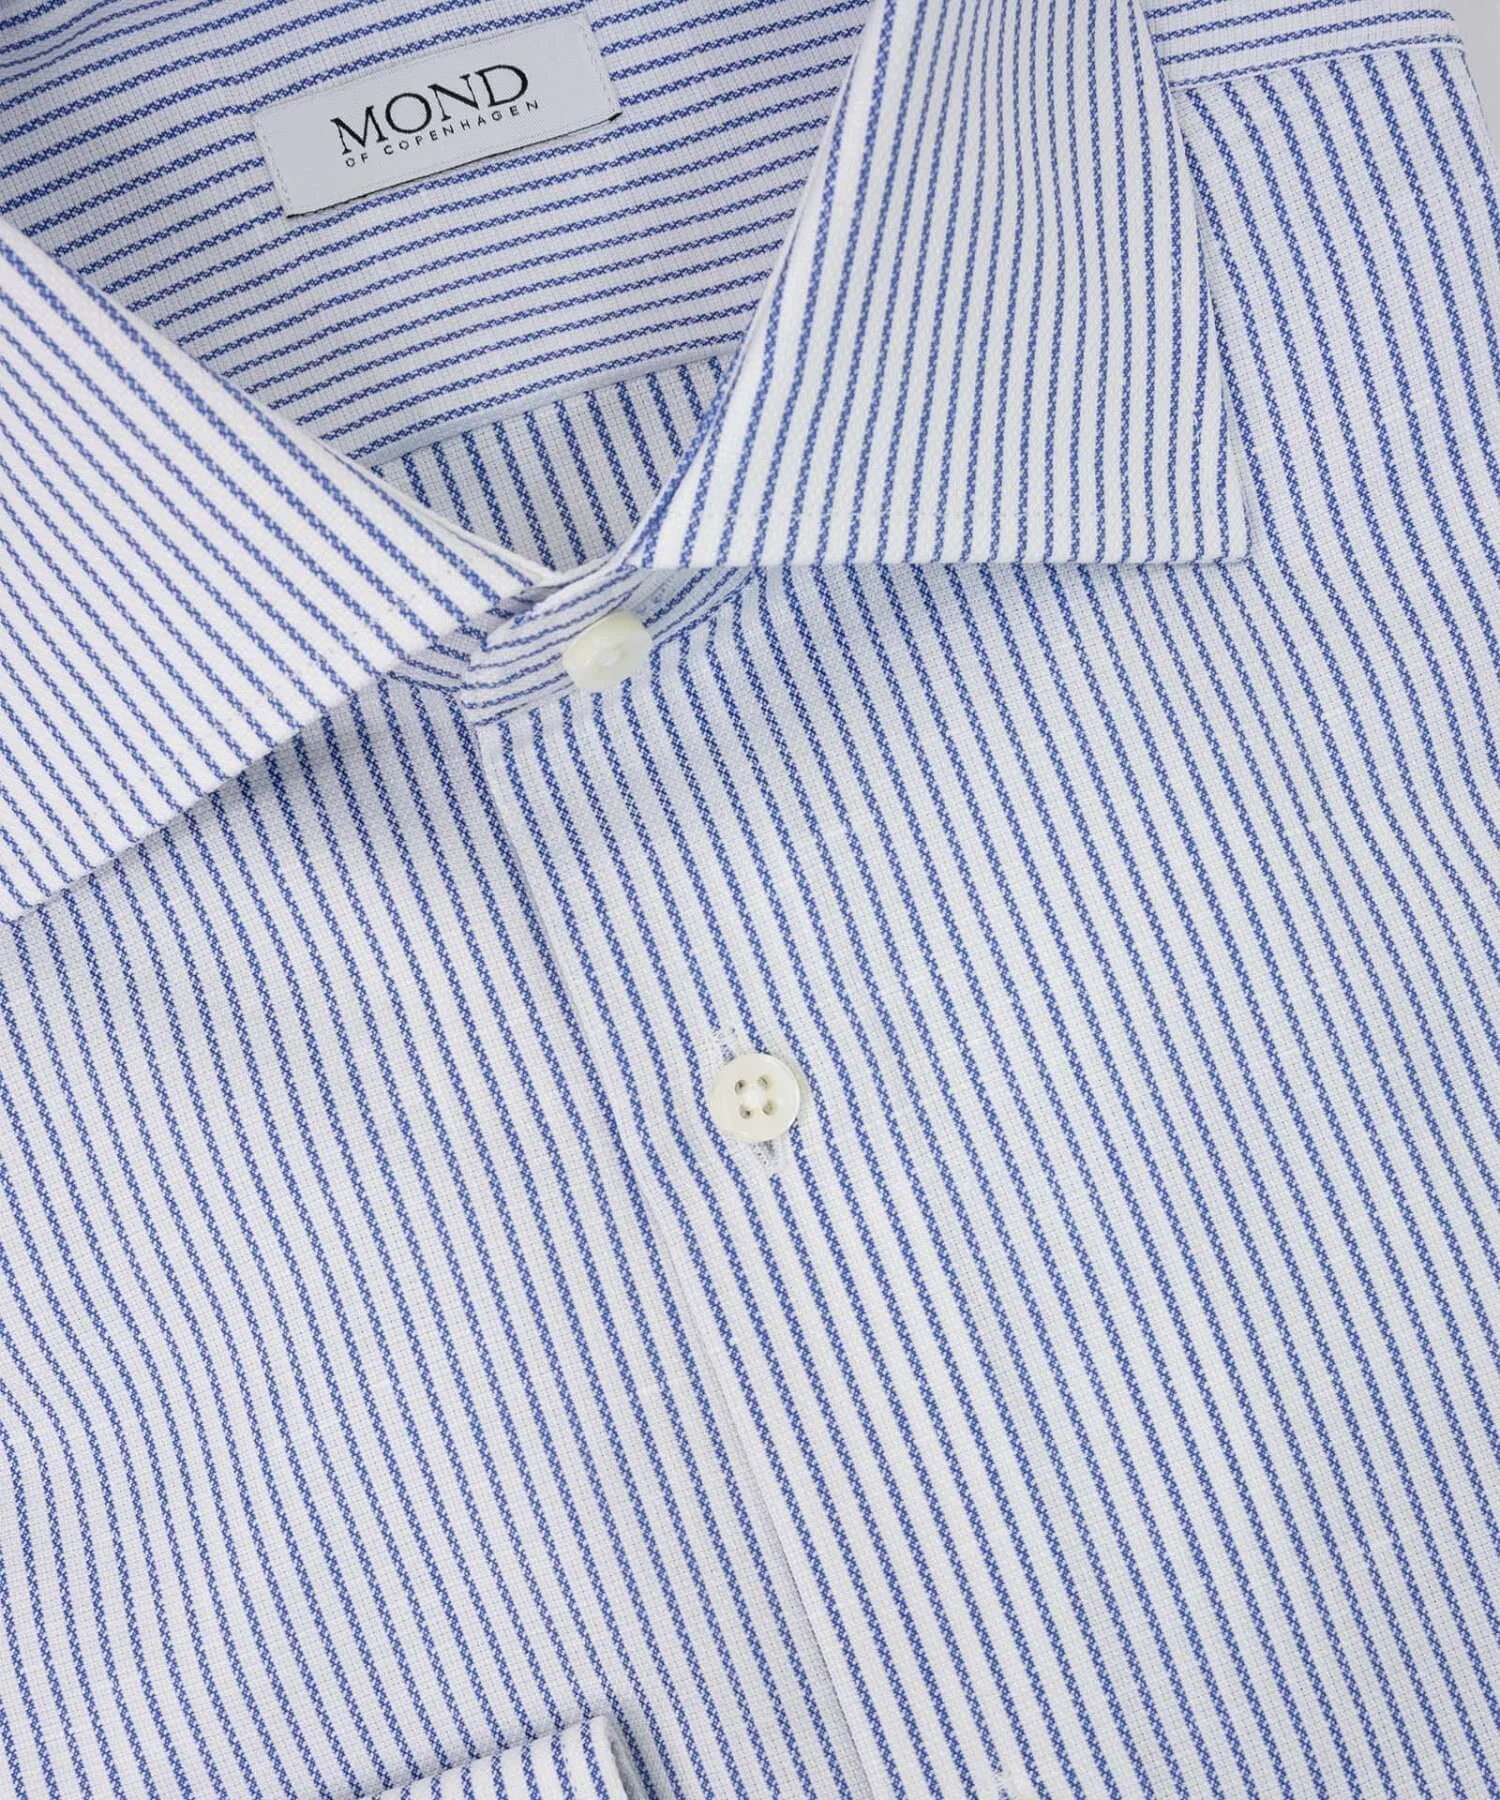 Blue Striped Cotton:Linen details